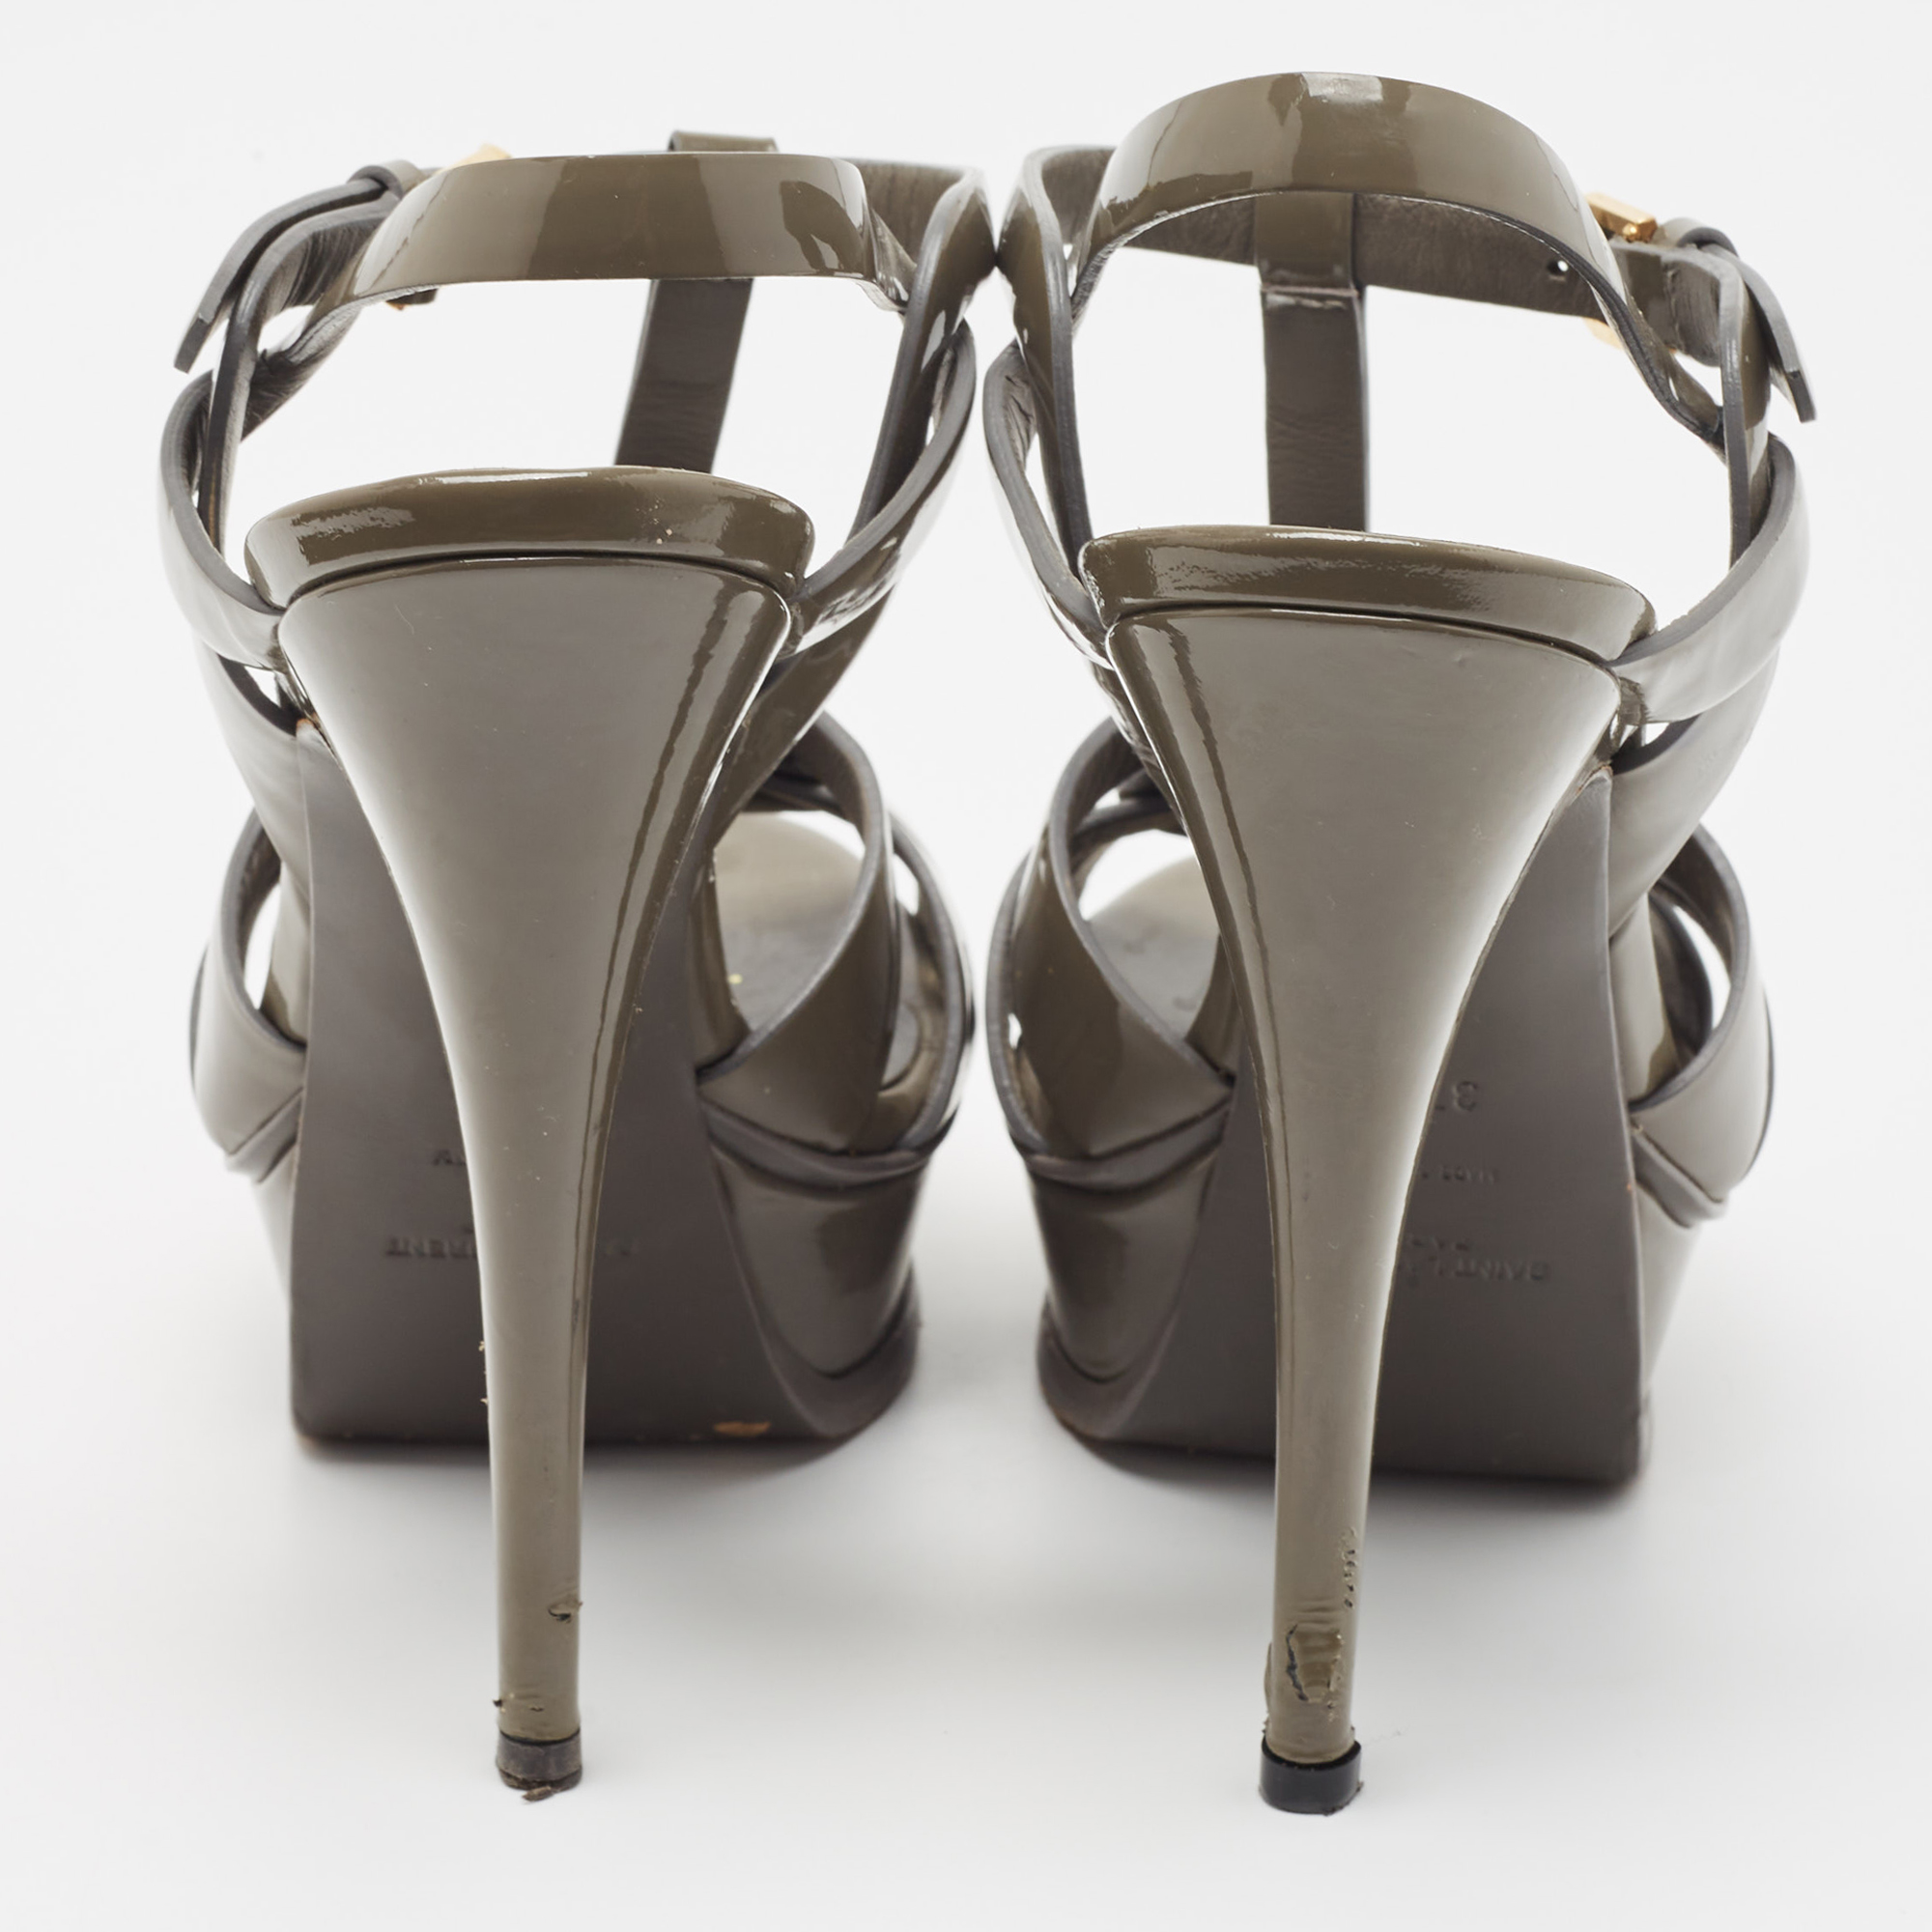 Yves Saint Laurent Grey Patent Tribute Sandals Size 37.5